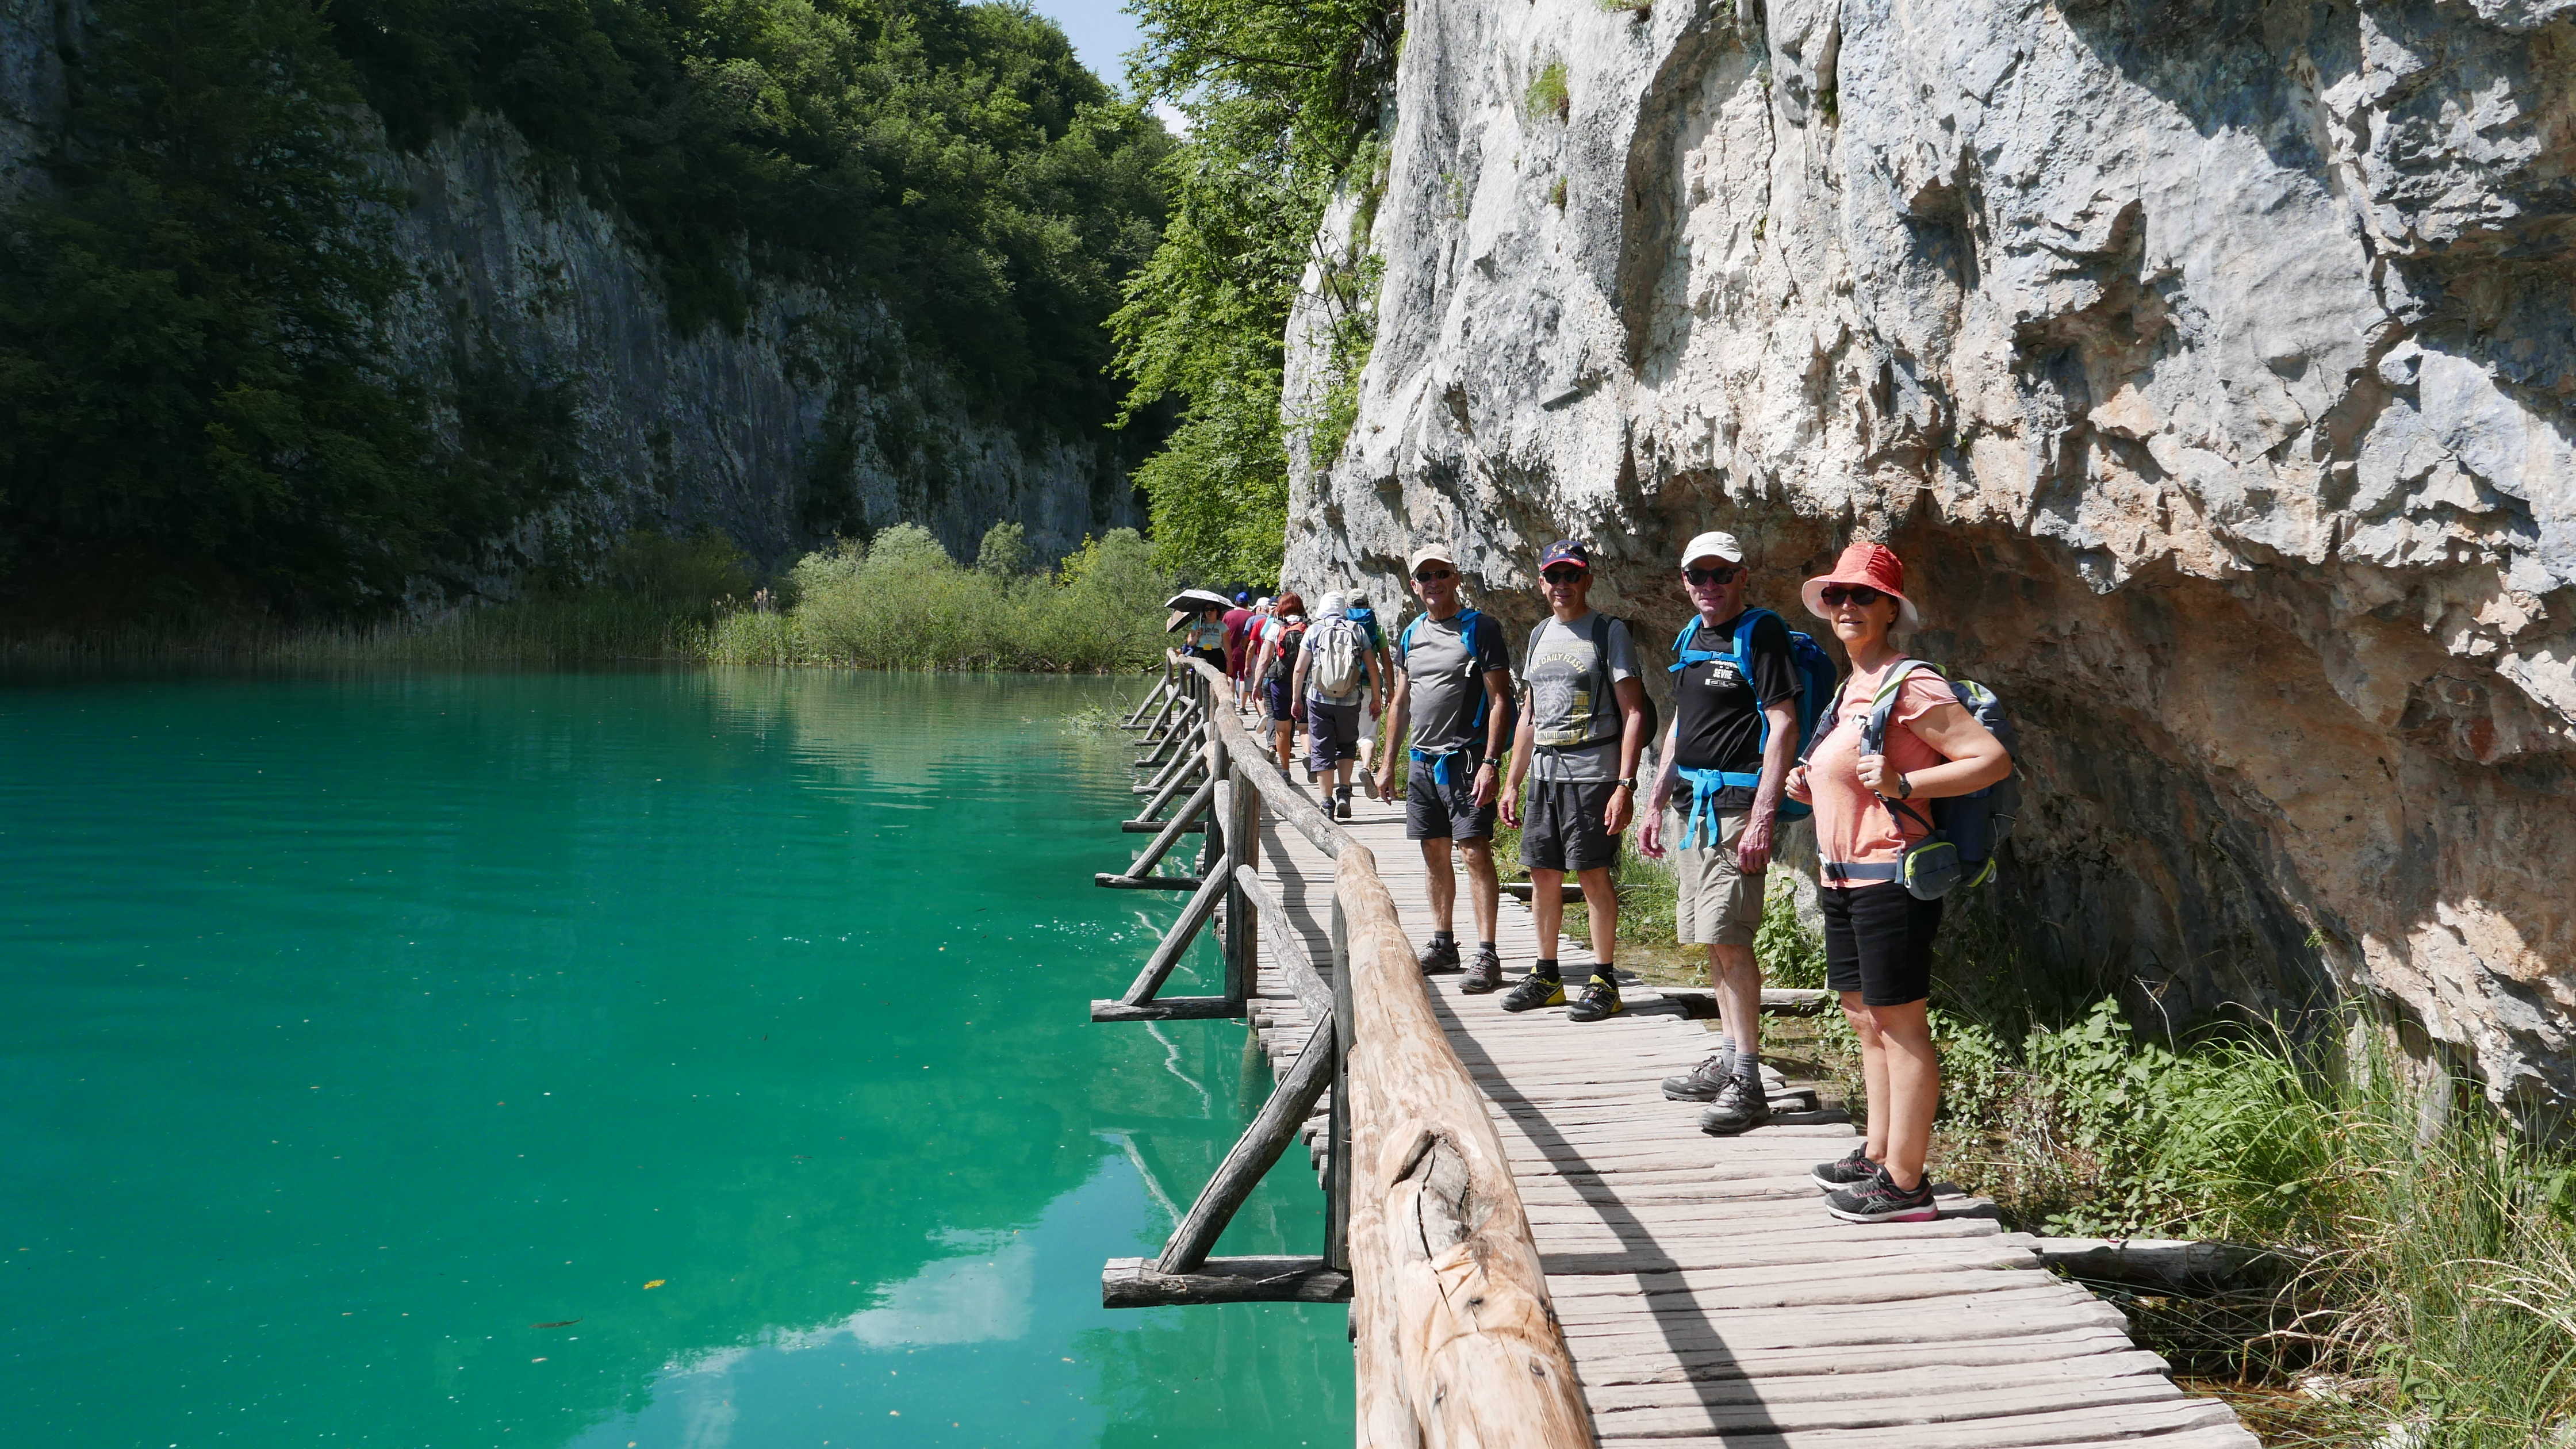 Randonneurs sur les ponts de bois dans le Parc de Plitvice